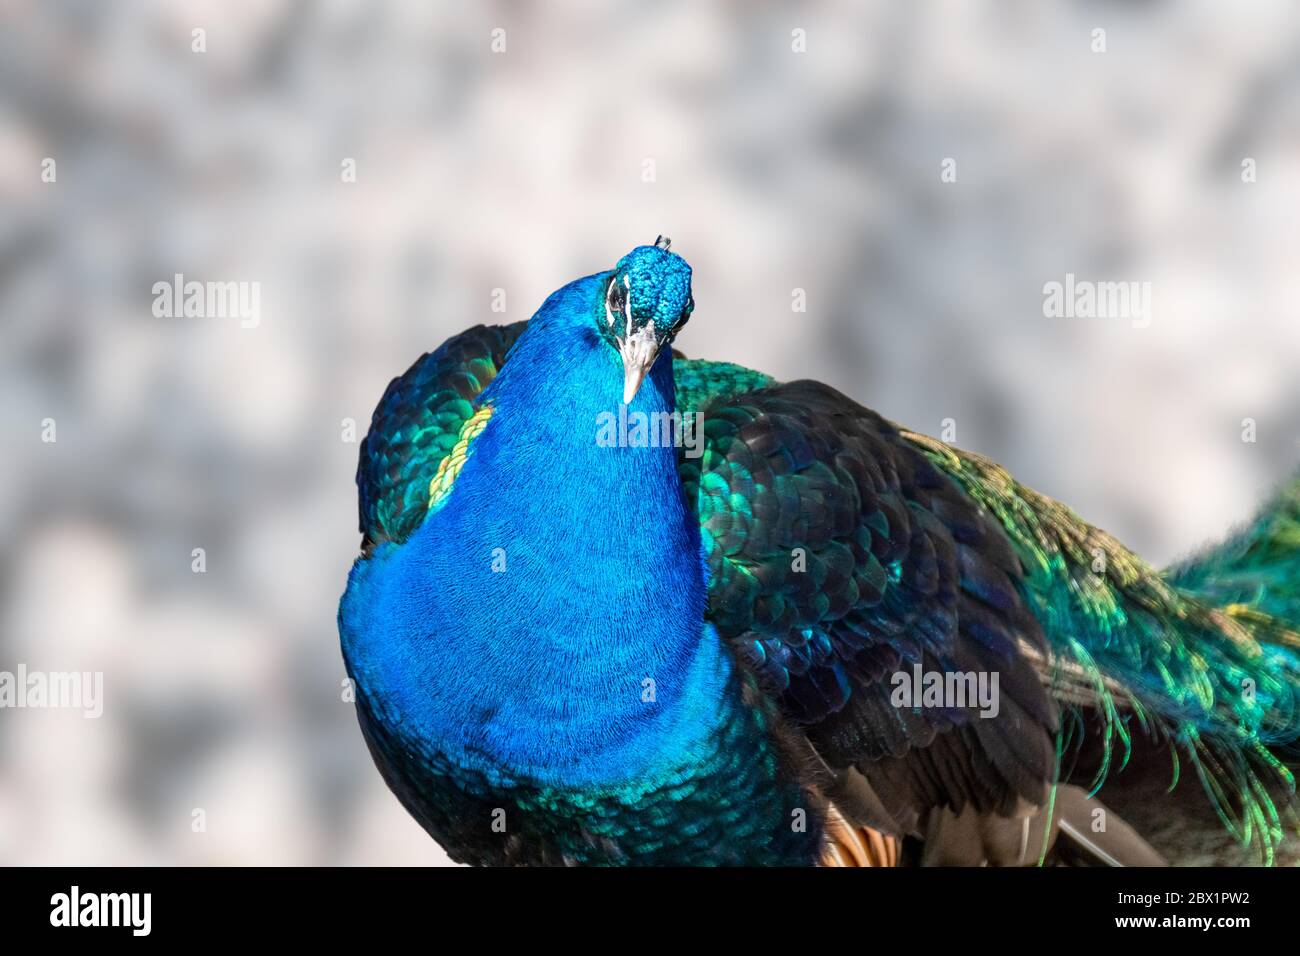 Blauer Pfauenvogel männlicher Pfau Vorderansicht mit langen fächerartigen Wappenfedern mit bunten Augenmuschel, die in der Kamera auf unscharfem Hintergrund schauen Stockfoto